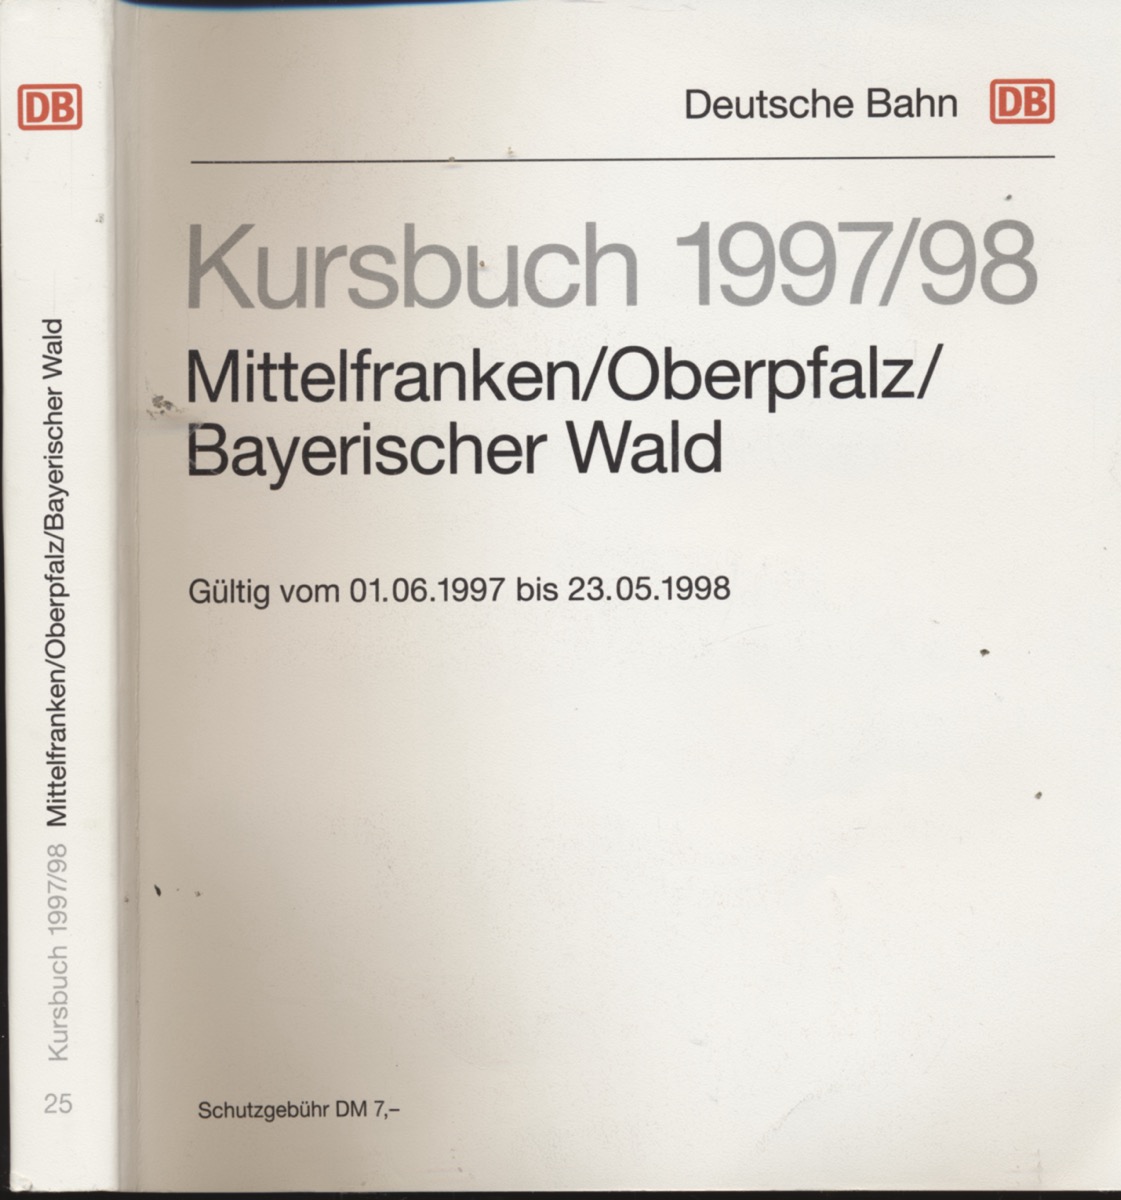 DEUTSCHE BAHN (Hrg.)  Kursbuch Mittelfranken/Oberpfalz/Bayerischer Wald 1997/98, gültig vom 01.06.1997 bis 23.05.1998. 